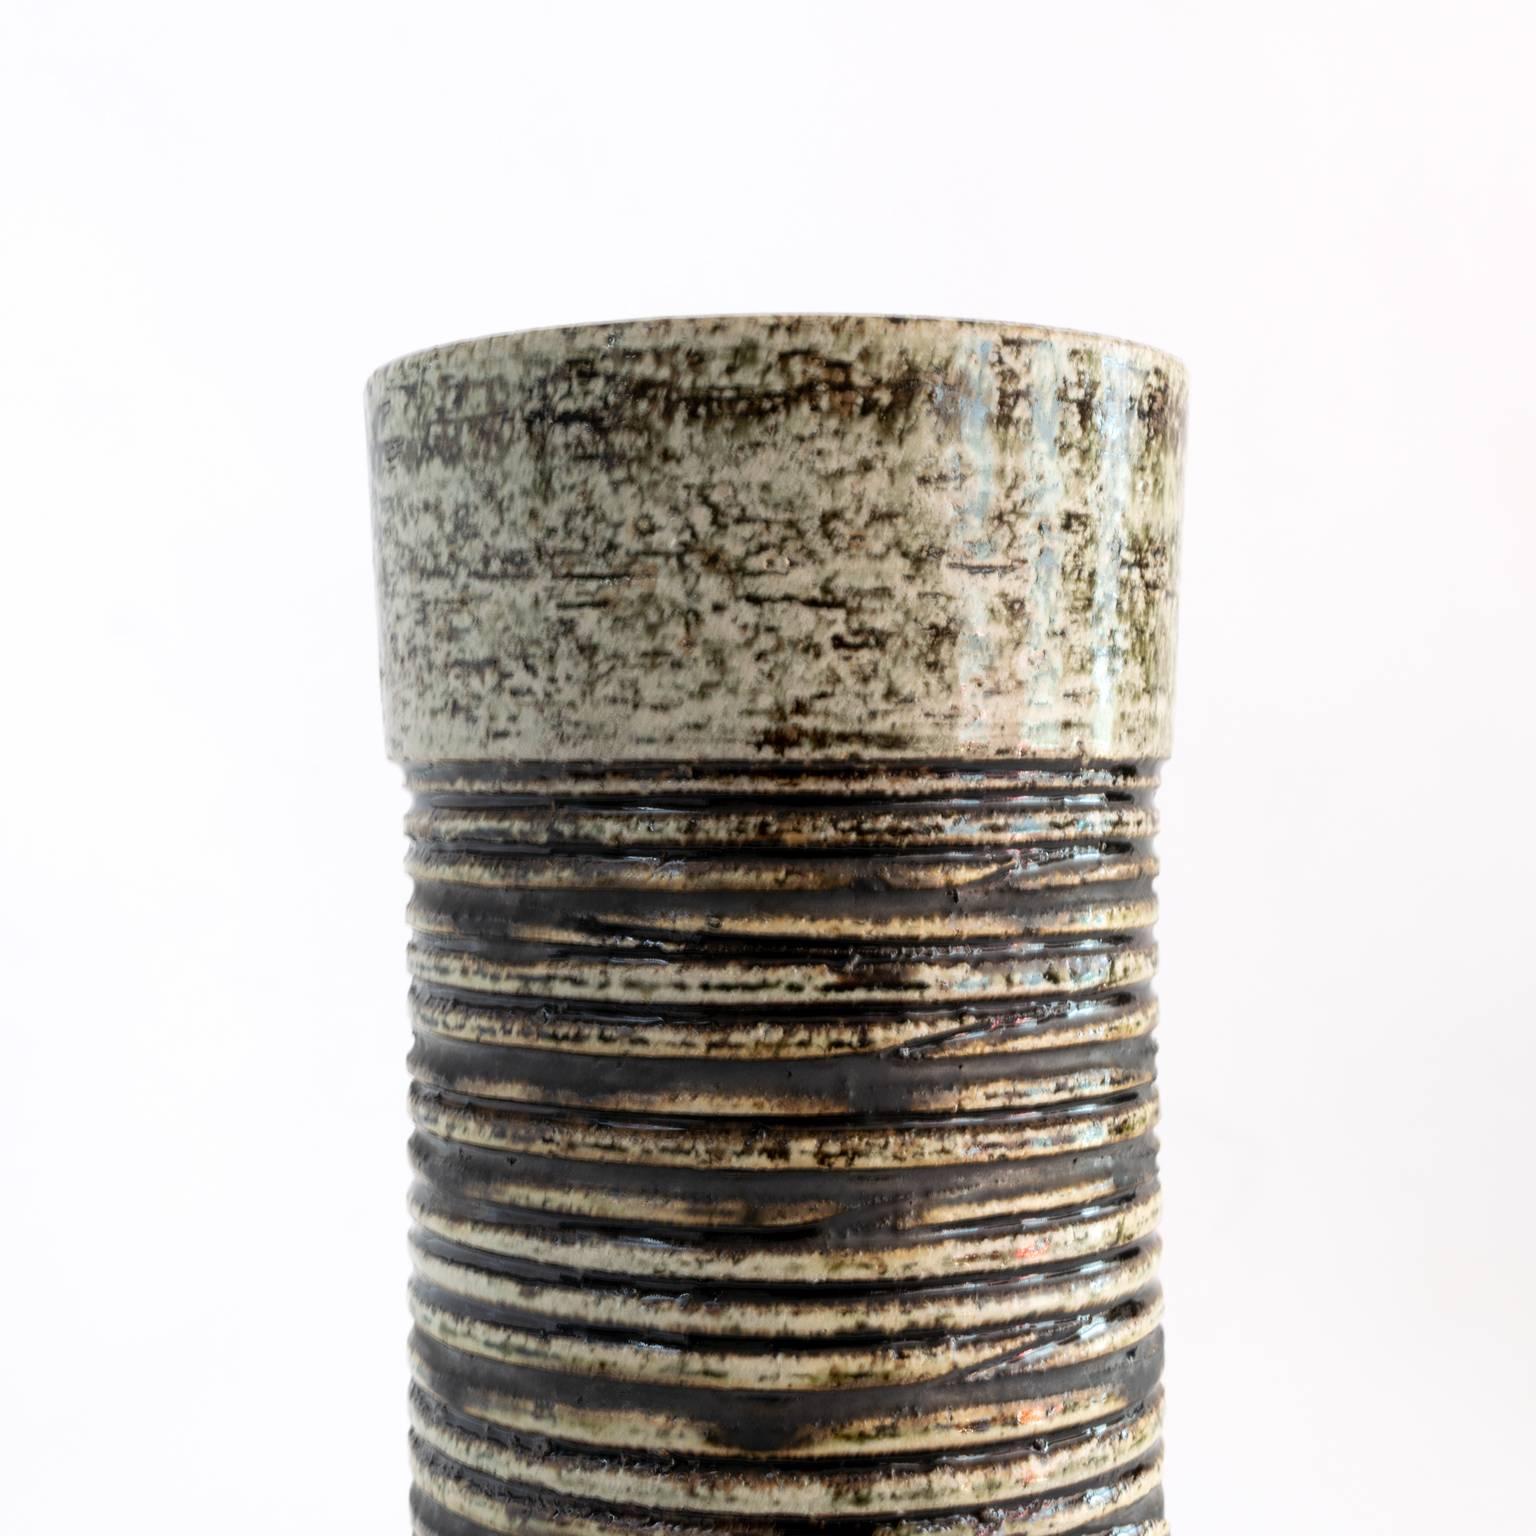 Scandinavian Modern Tall Cylinder Shaped Charmotte Clay Vase Britt-Louise Sundell for Gustavsberg